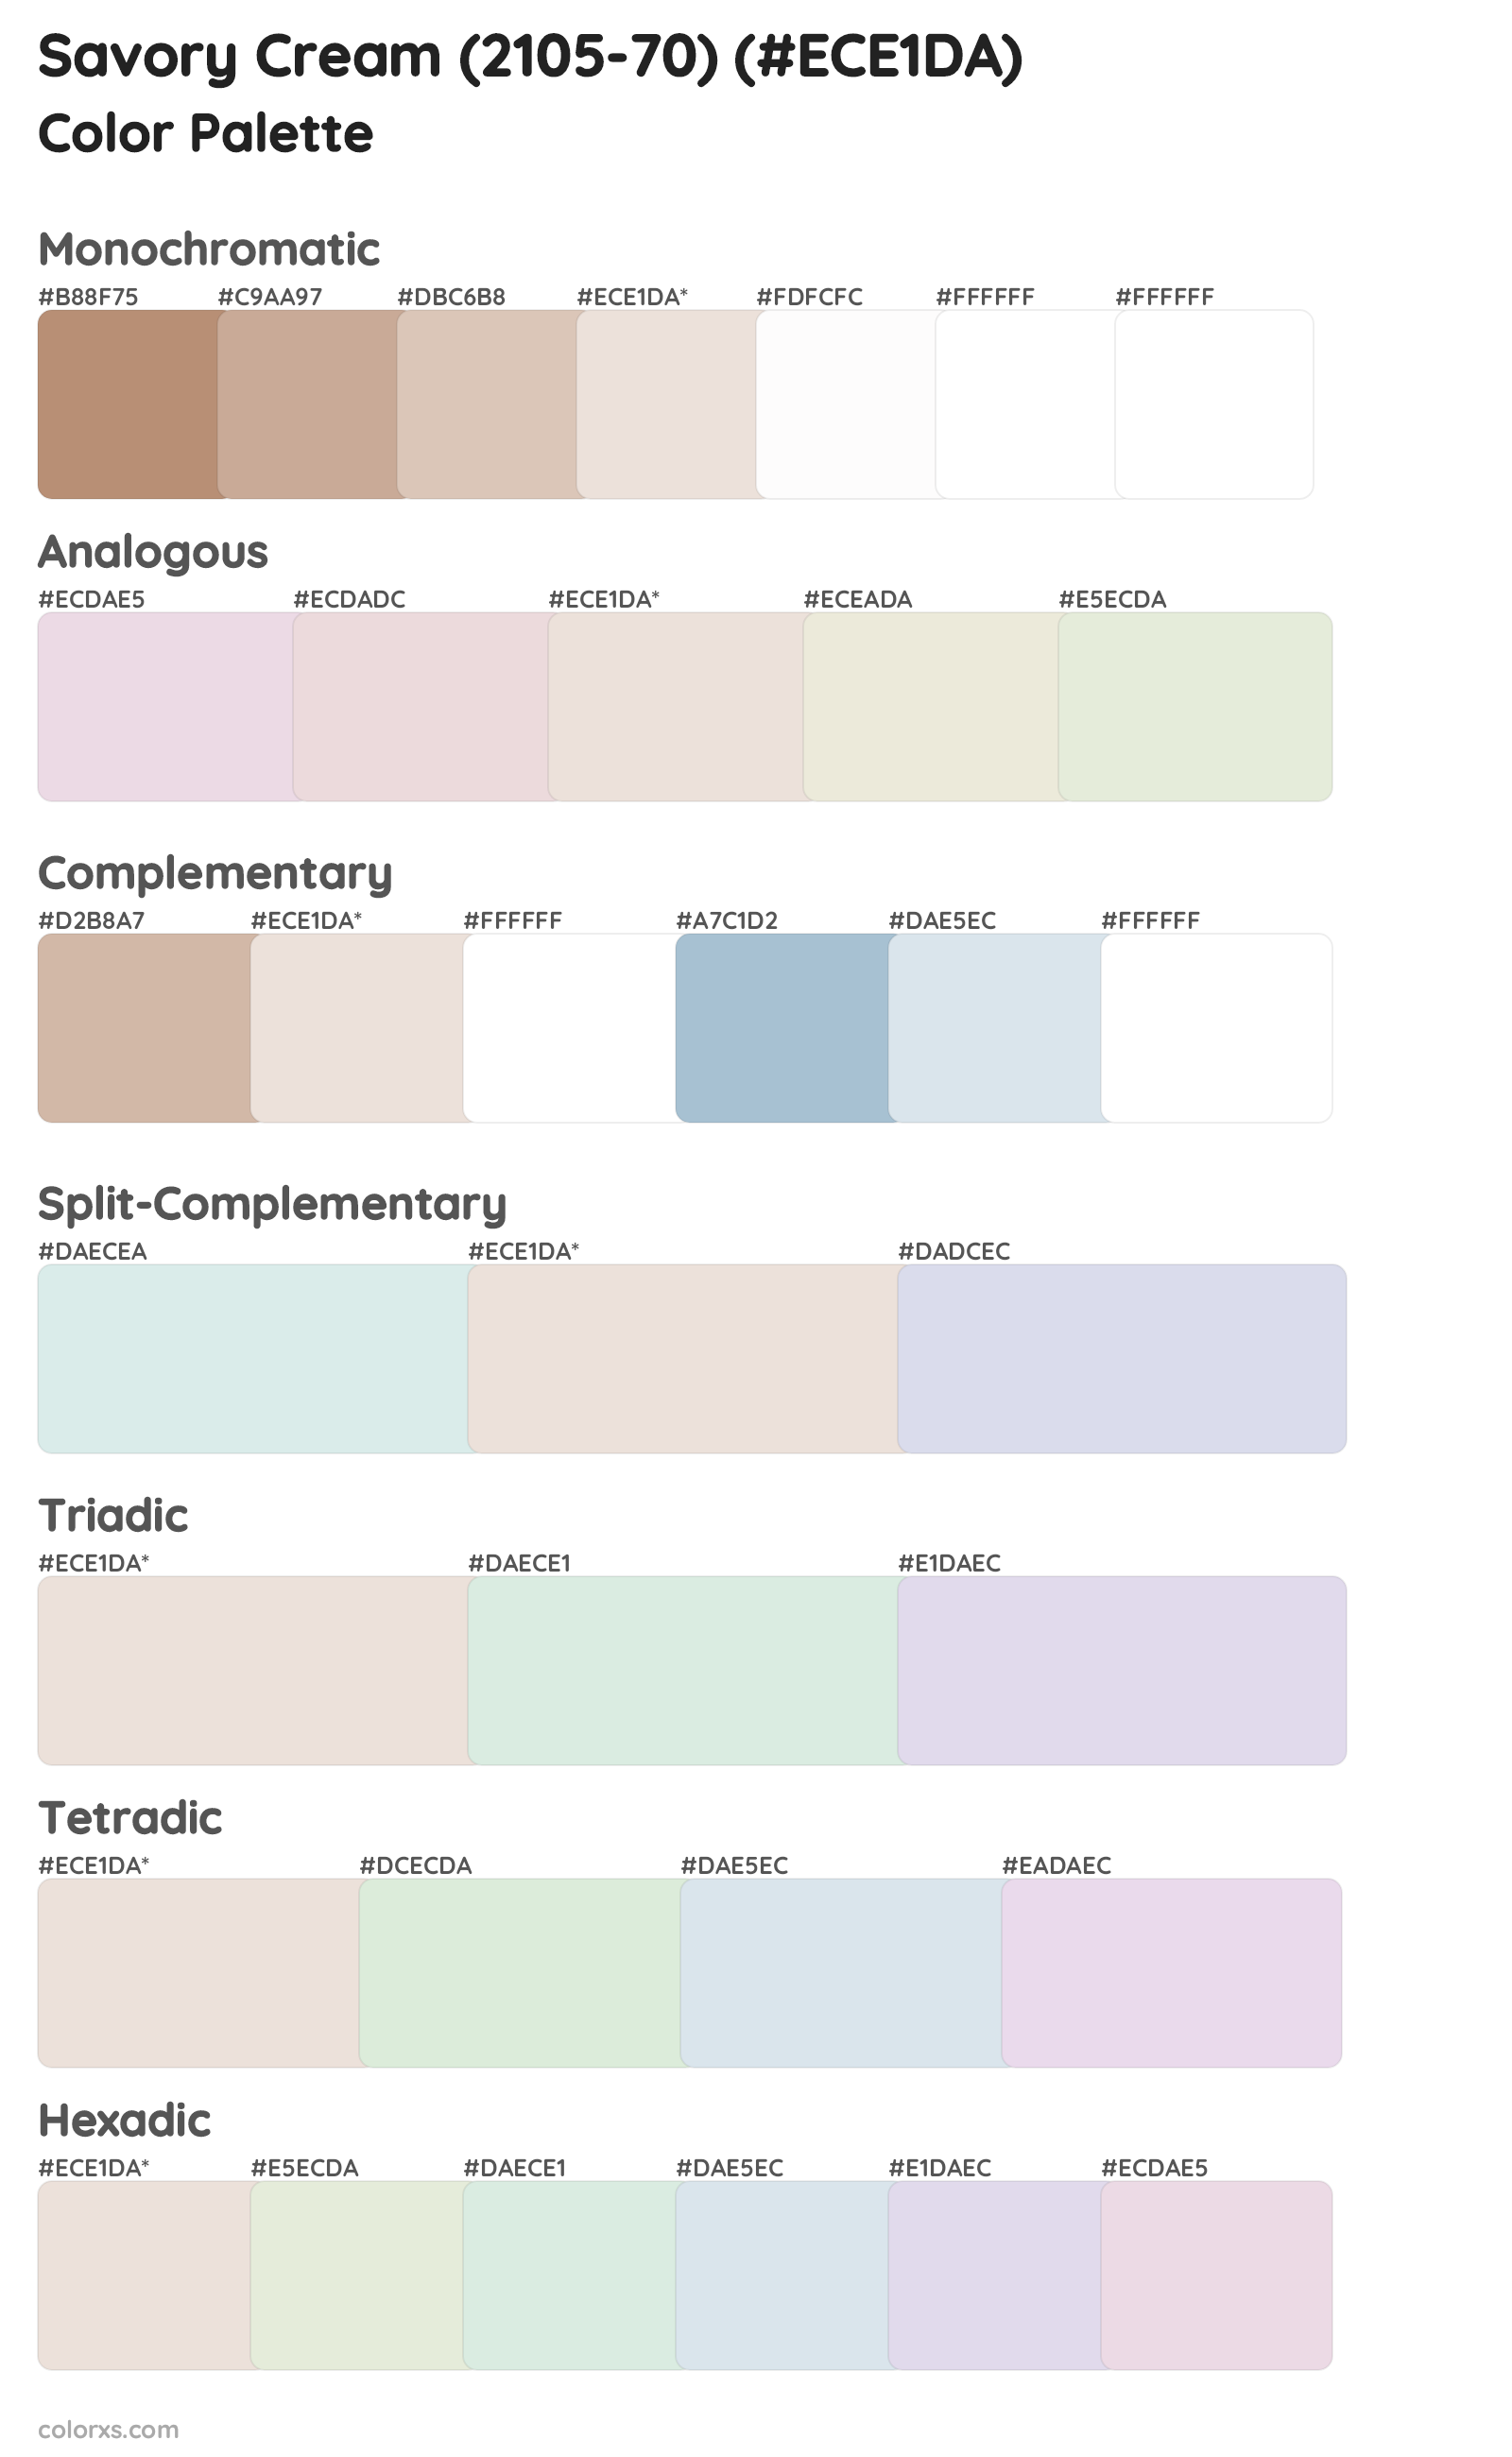 Savory Cream (2105-70) Color Scheme Palettes